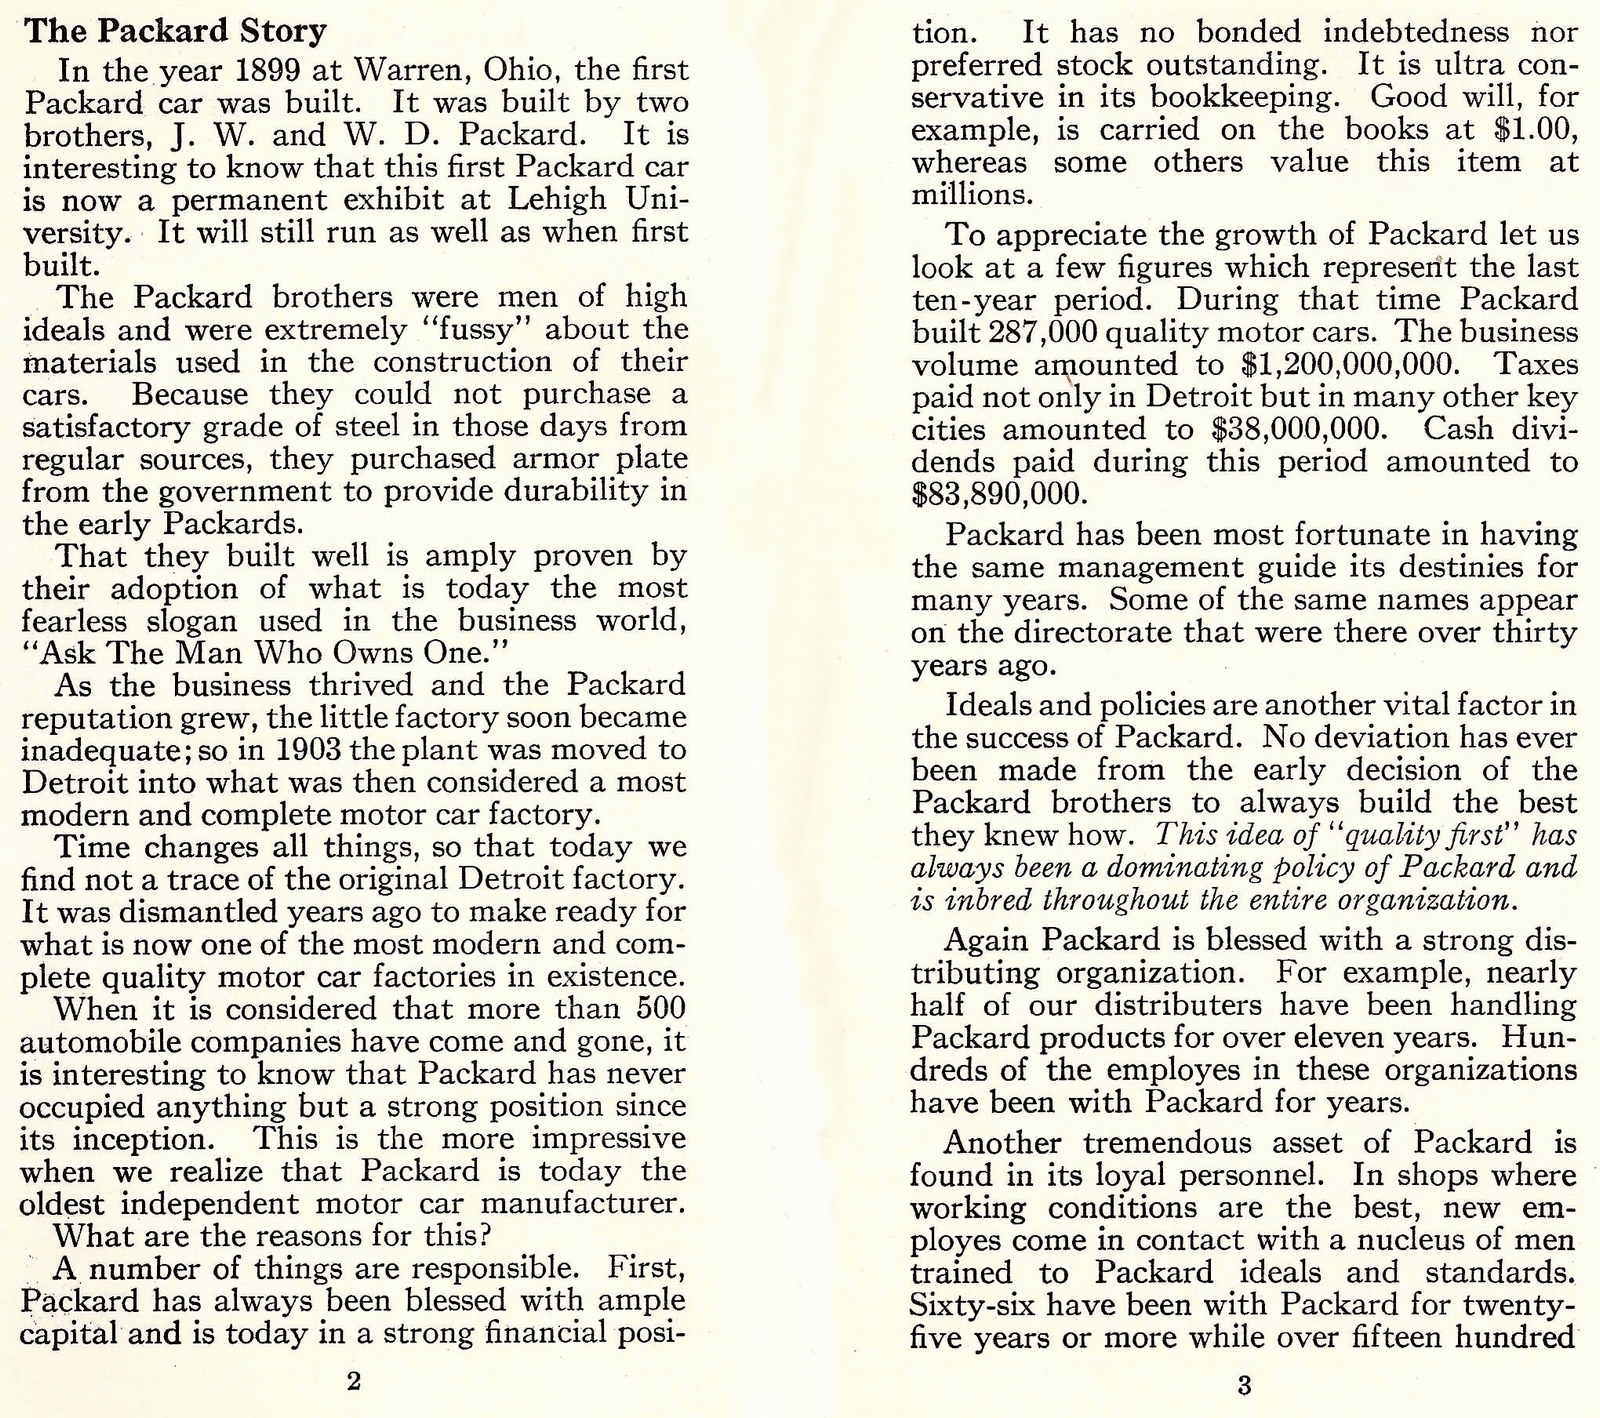 n_1933 Packard Facts Booklet-02-03.jpg